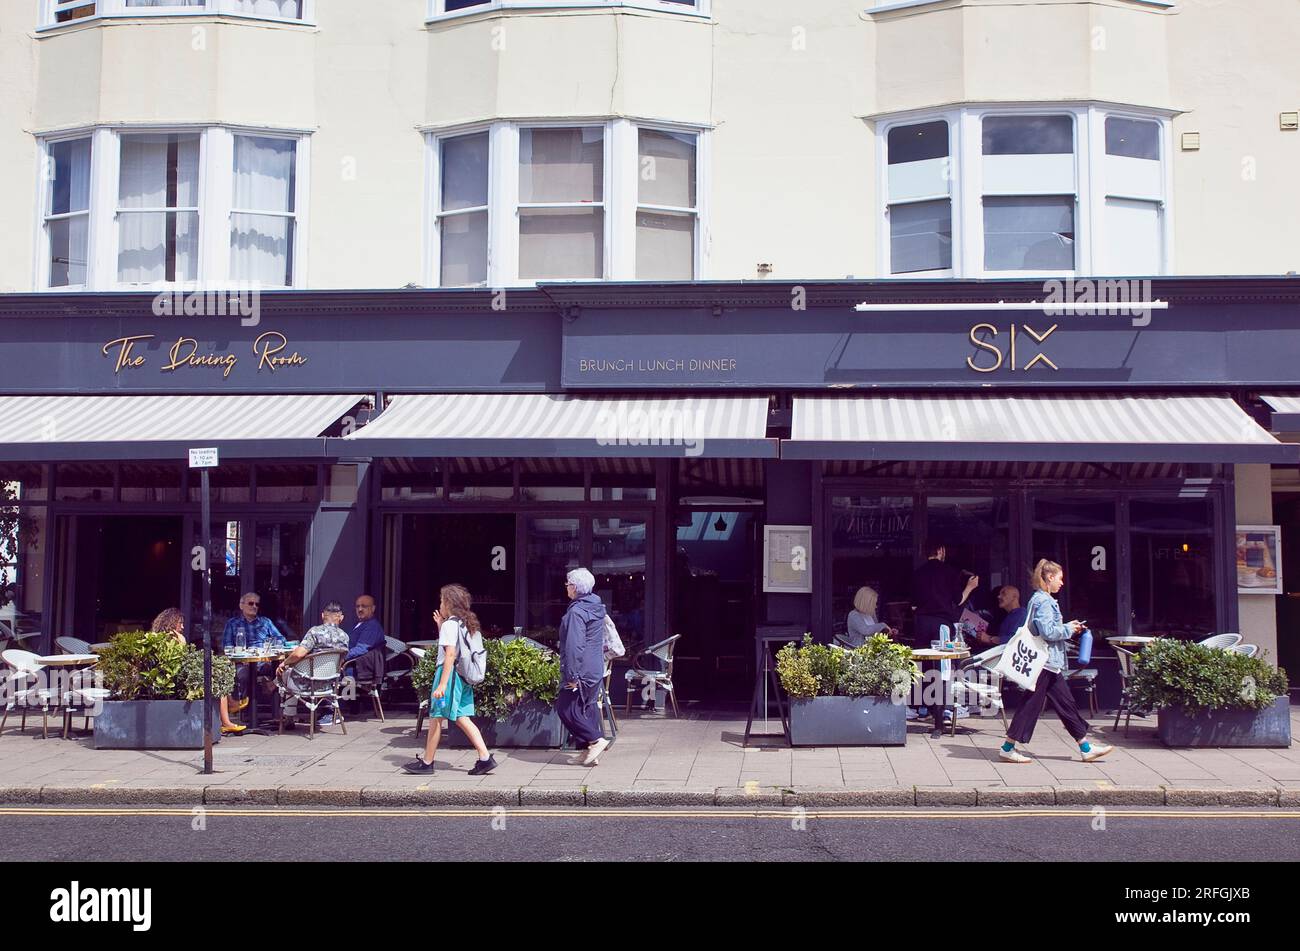 Inghilterra, East Sussex, Brighton, Hove, Western Road, La gente sedeva a mangiare e bere fuori dal ristorante Six. Foto Stock